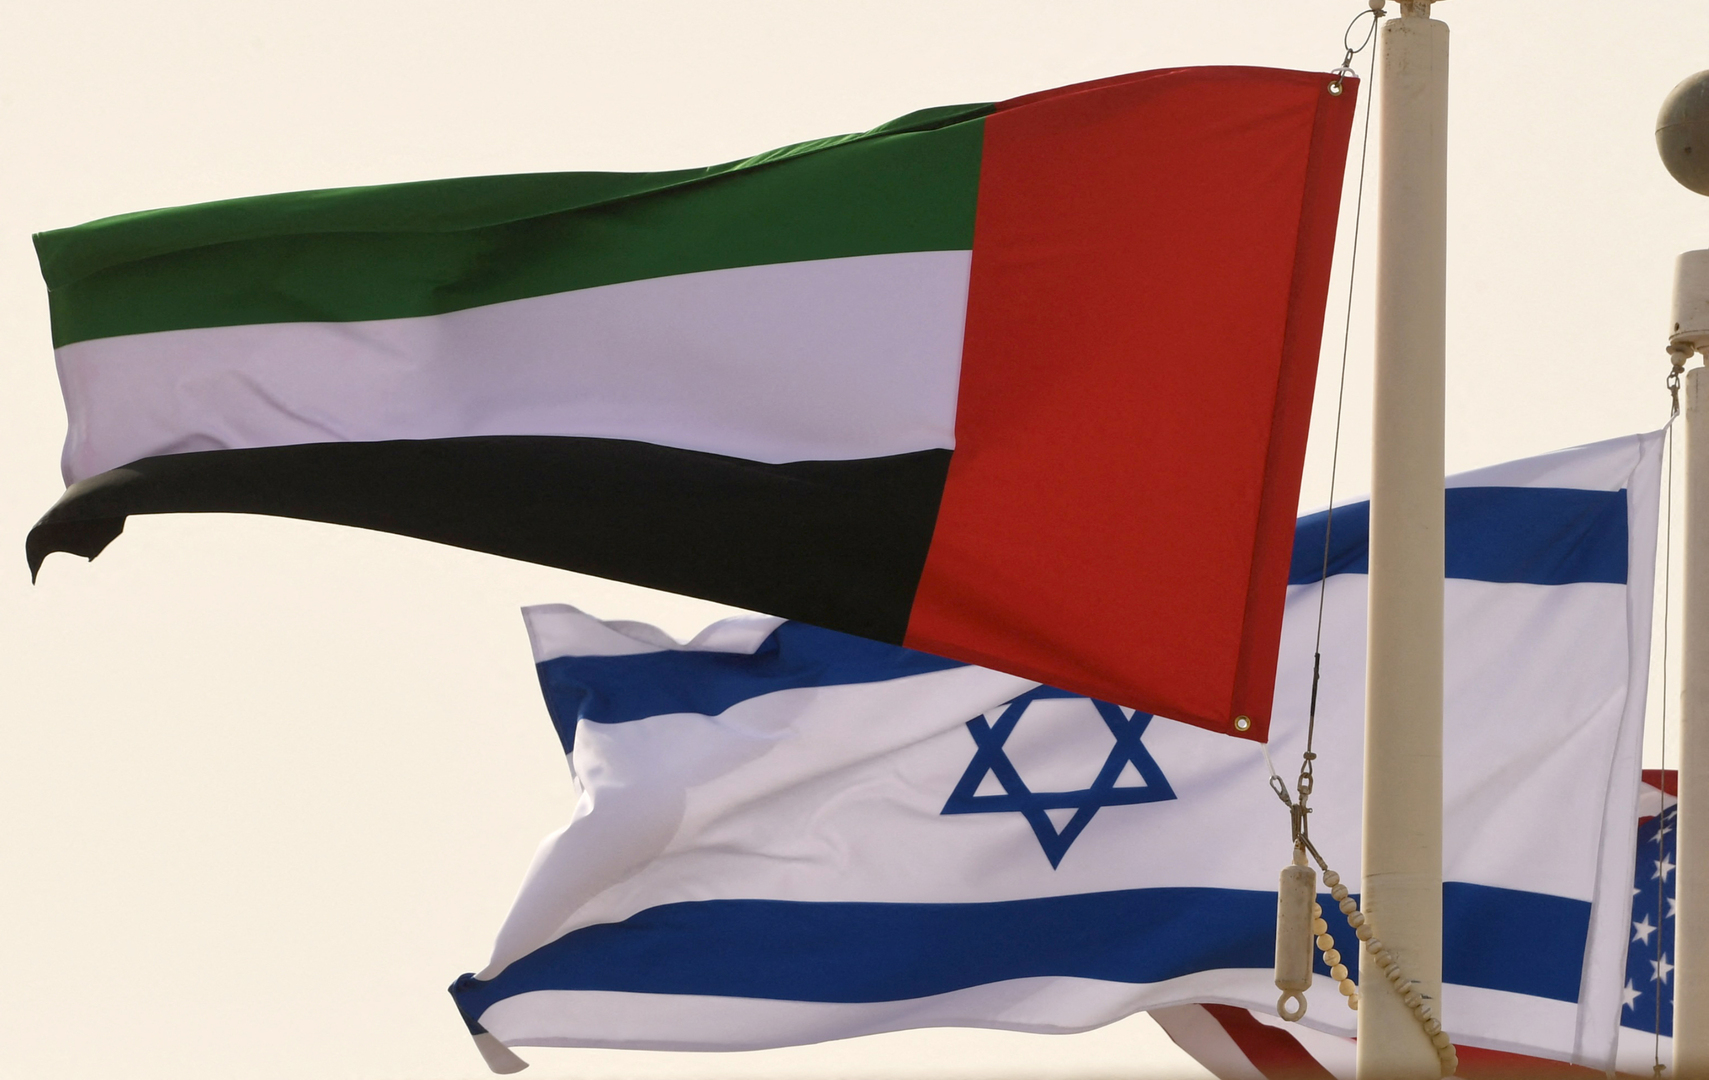 اتفاقية تاريخية مرتقبة قد توقع بين إسرائيل والإمارات